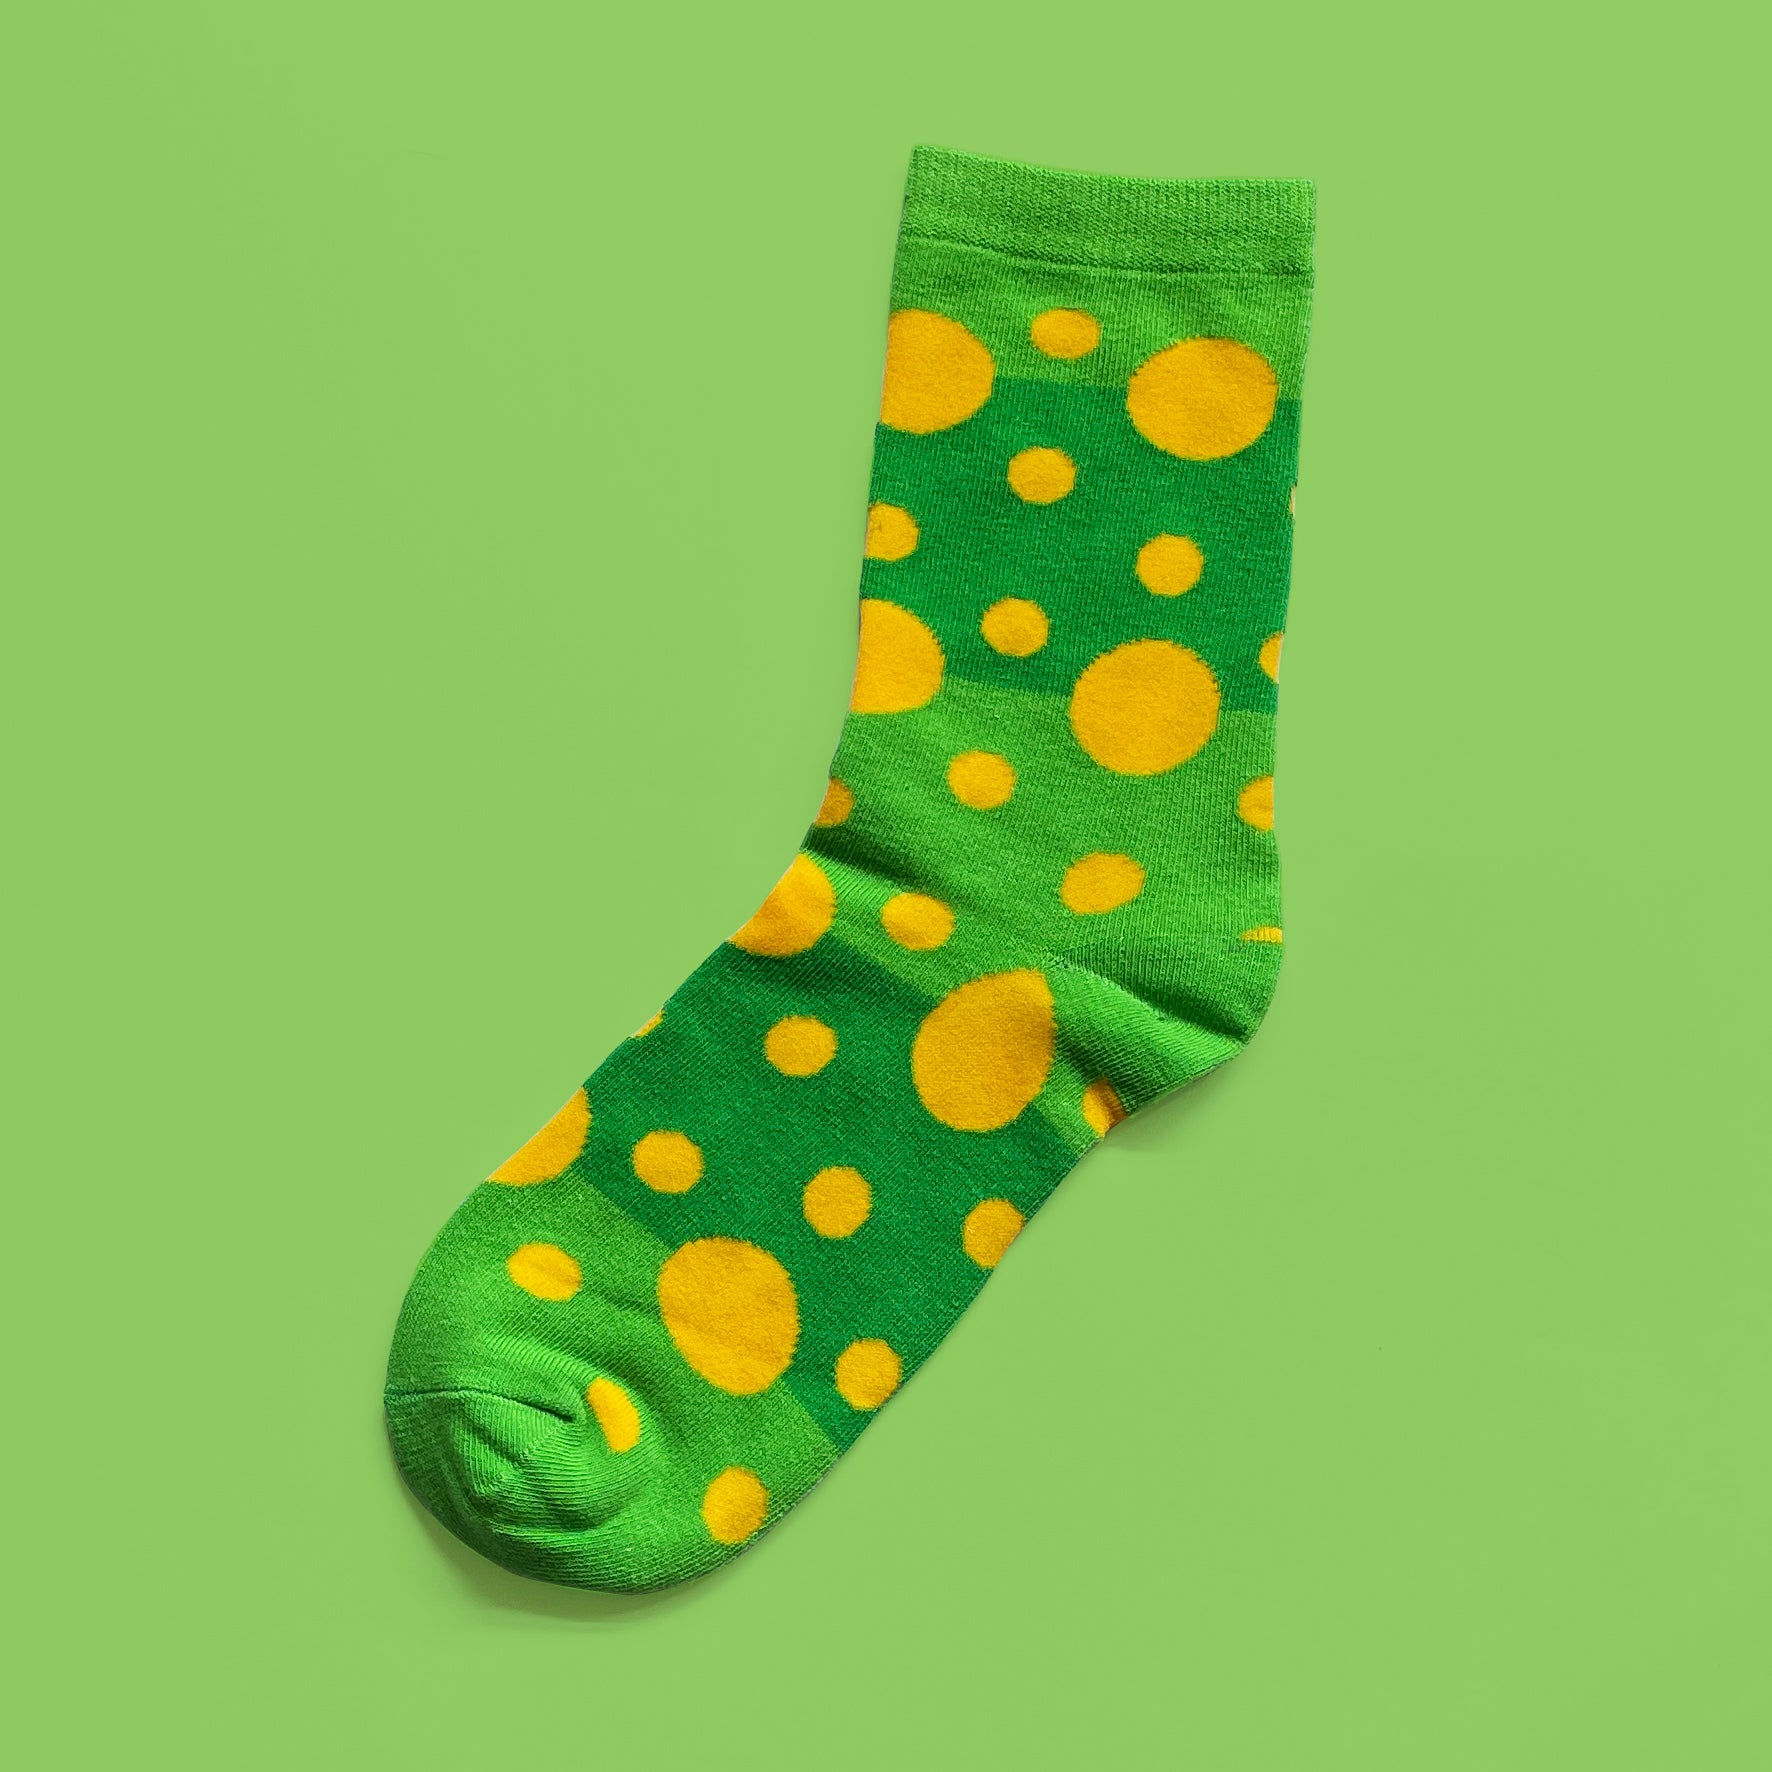 The Single Socks I Suzy Spots